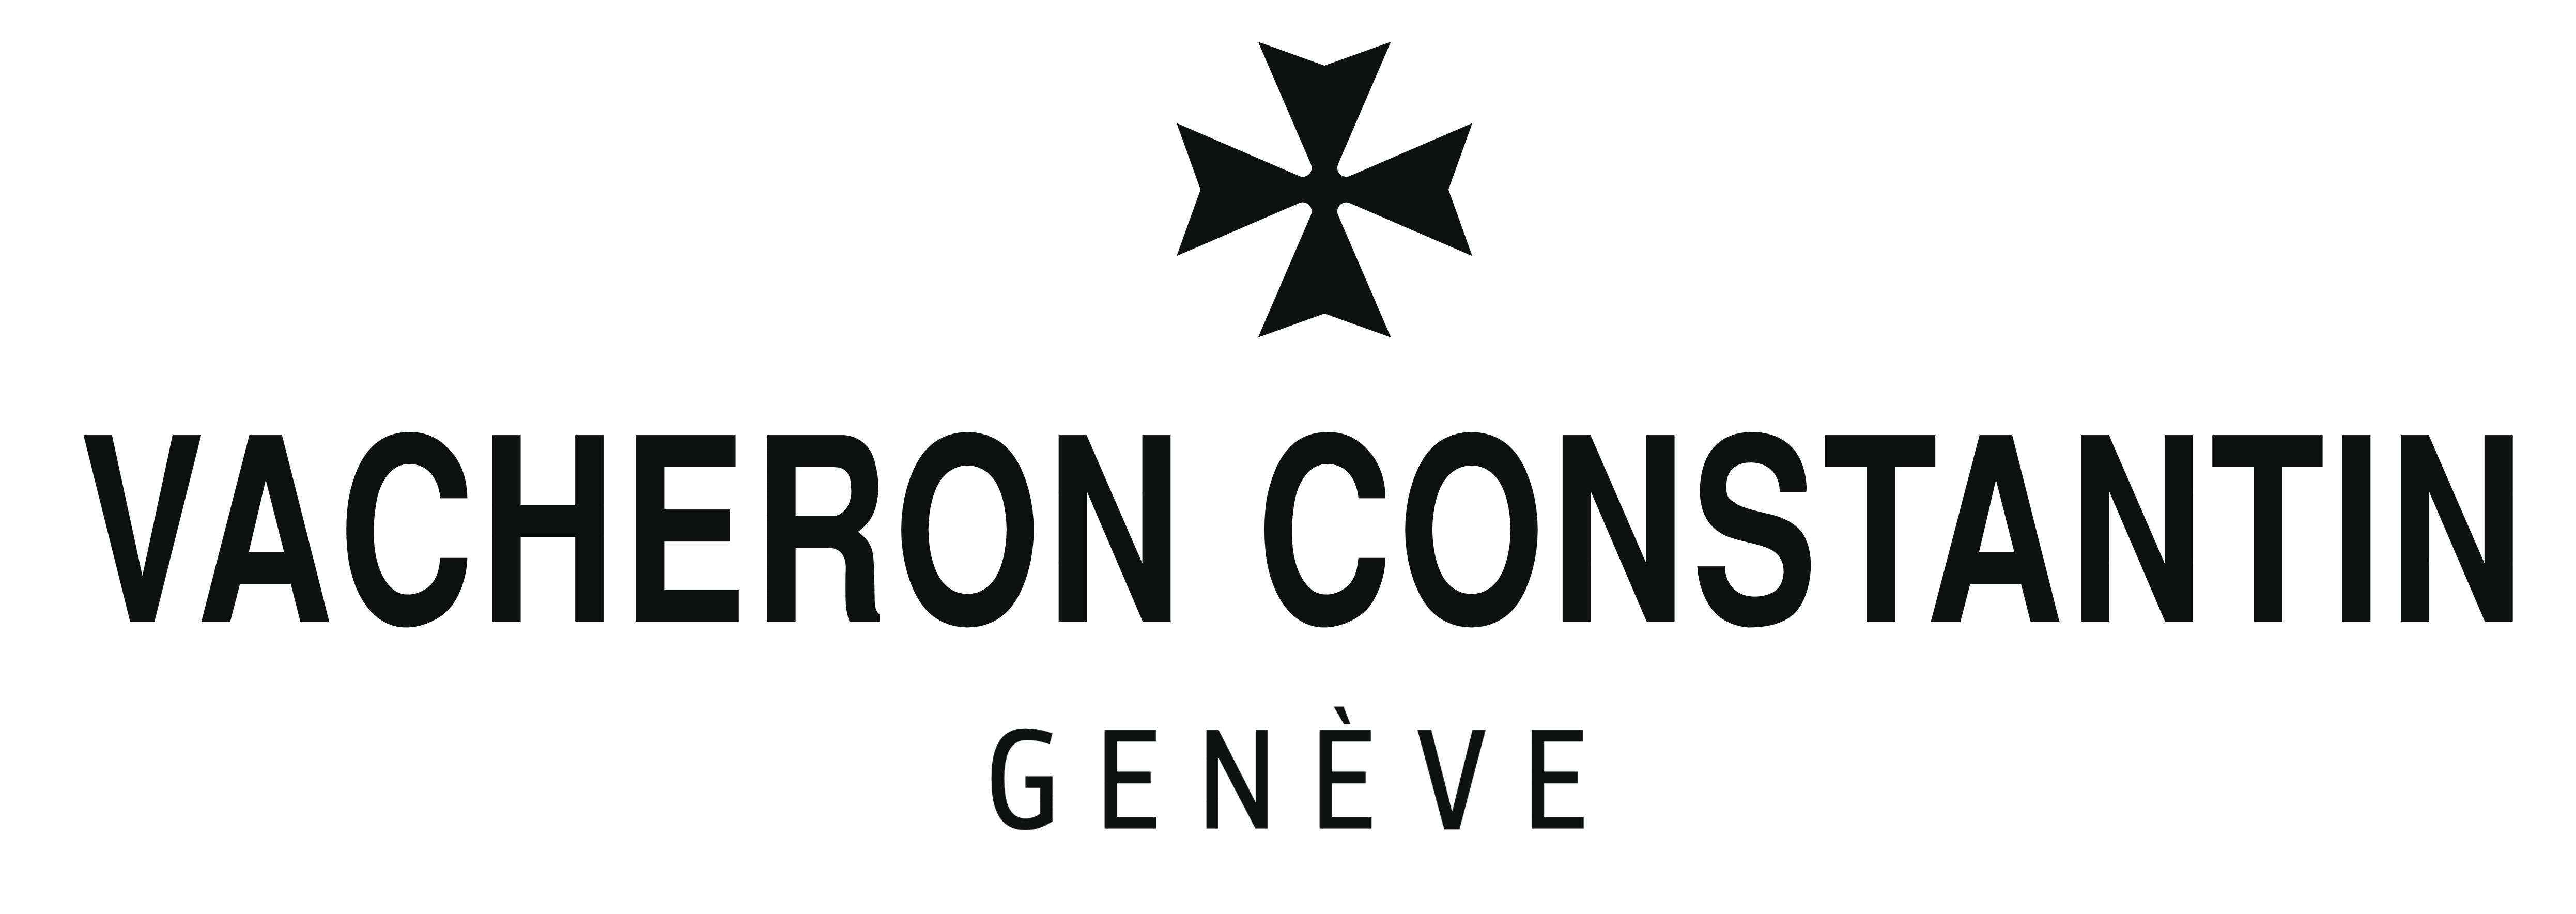 Vacheron constantin logo